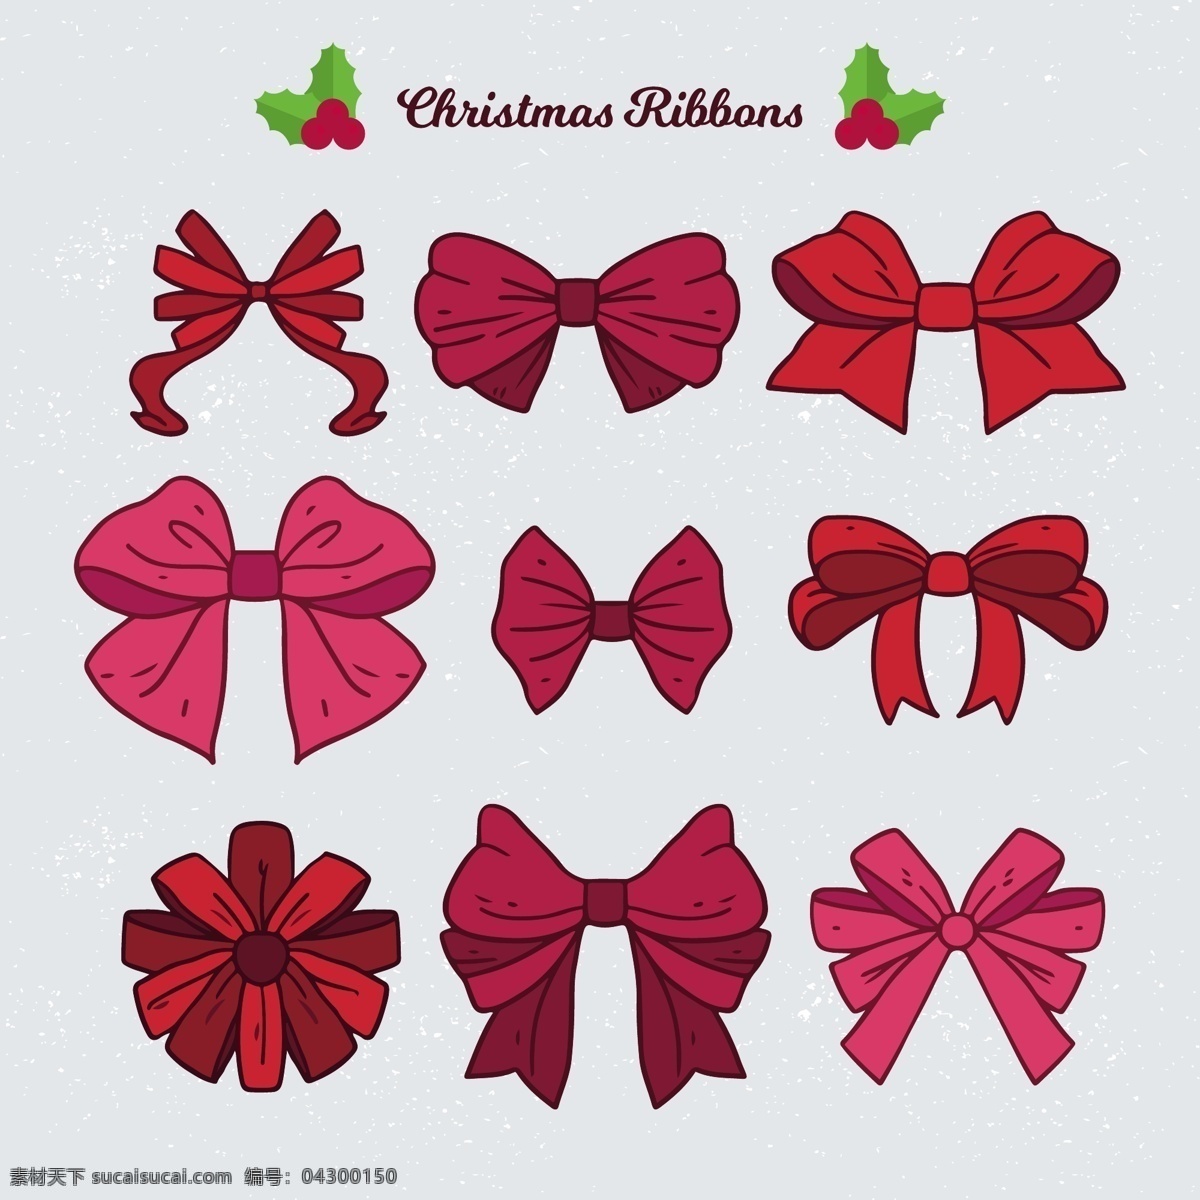 各种 红色 圣诞 装饰 蝴蝶结 元素 christmas eps元素 merry 红色蝴蝶结 卡通圣诞元素 设计素材 圣诞快乐 圣诞庆典 圣诞素材 装饰图案